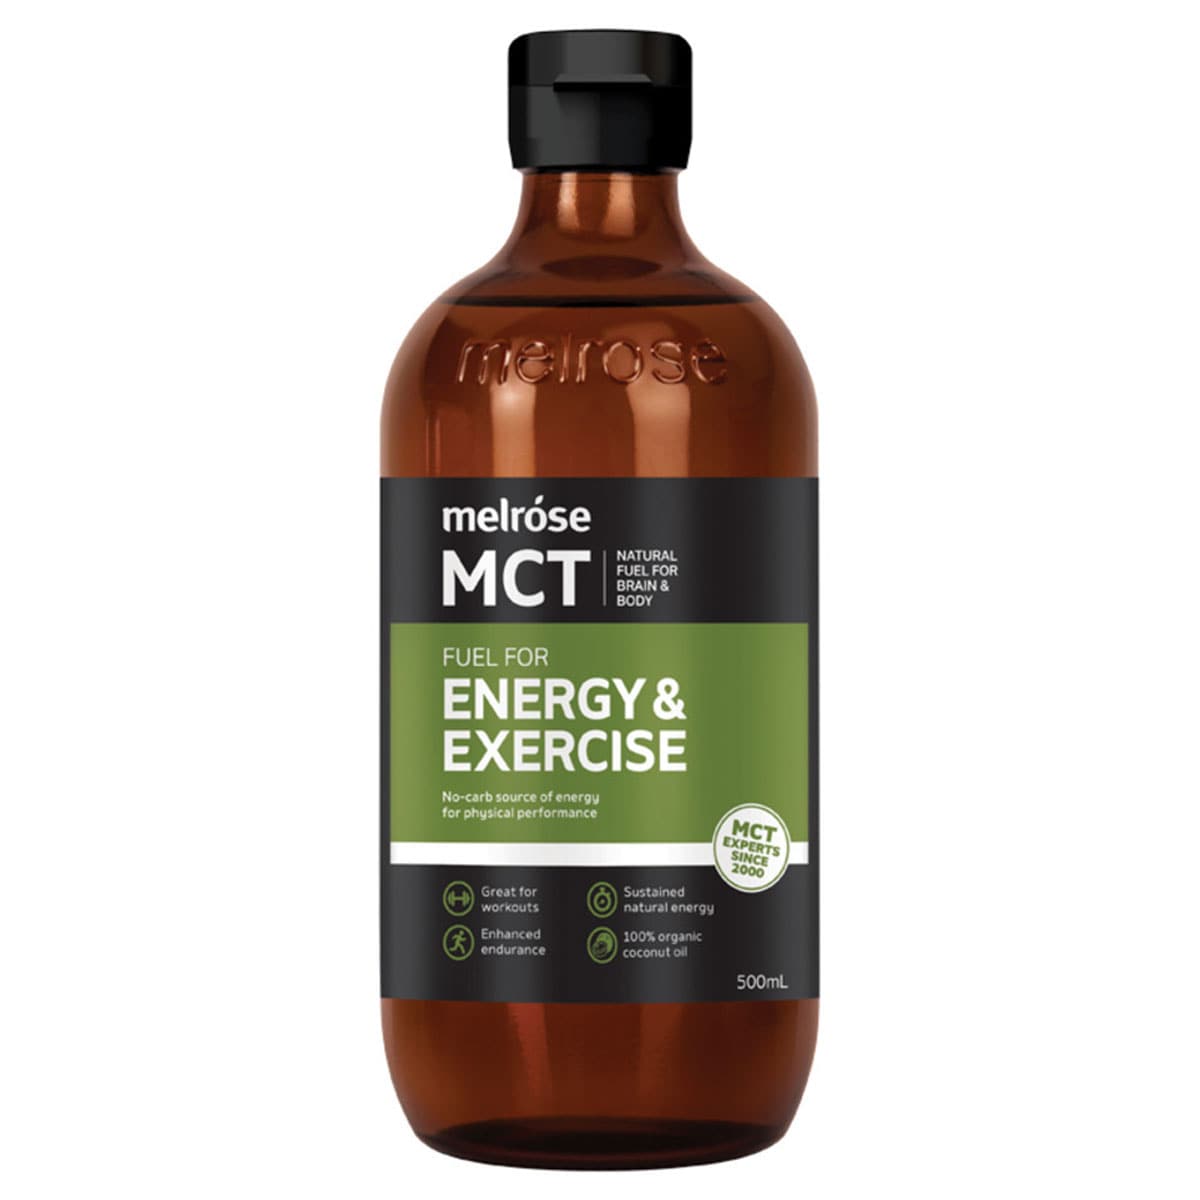 Melrose Mct Oil Energy & Exercise 500ml Australia